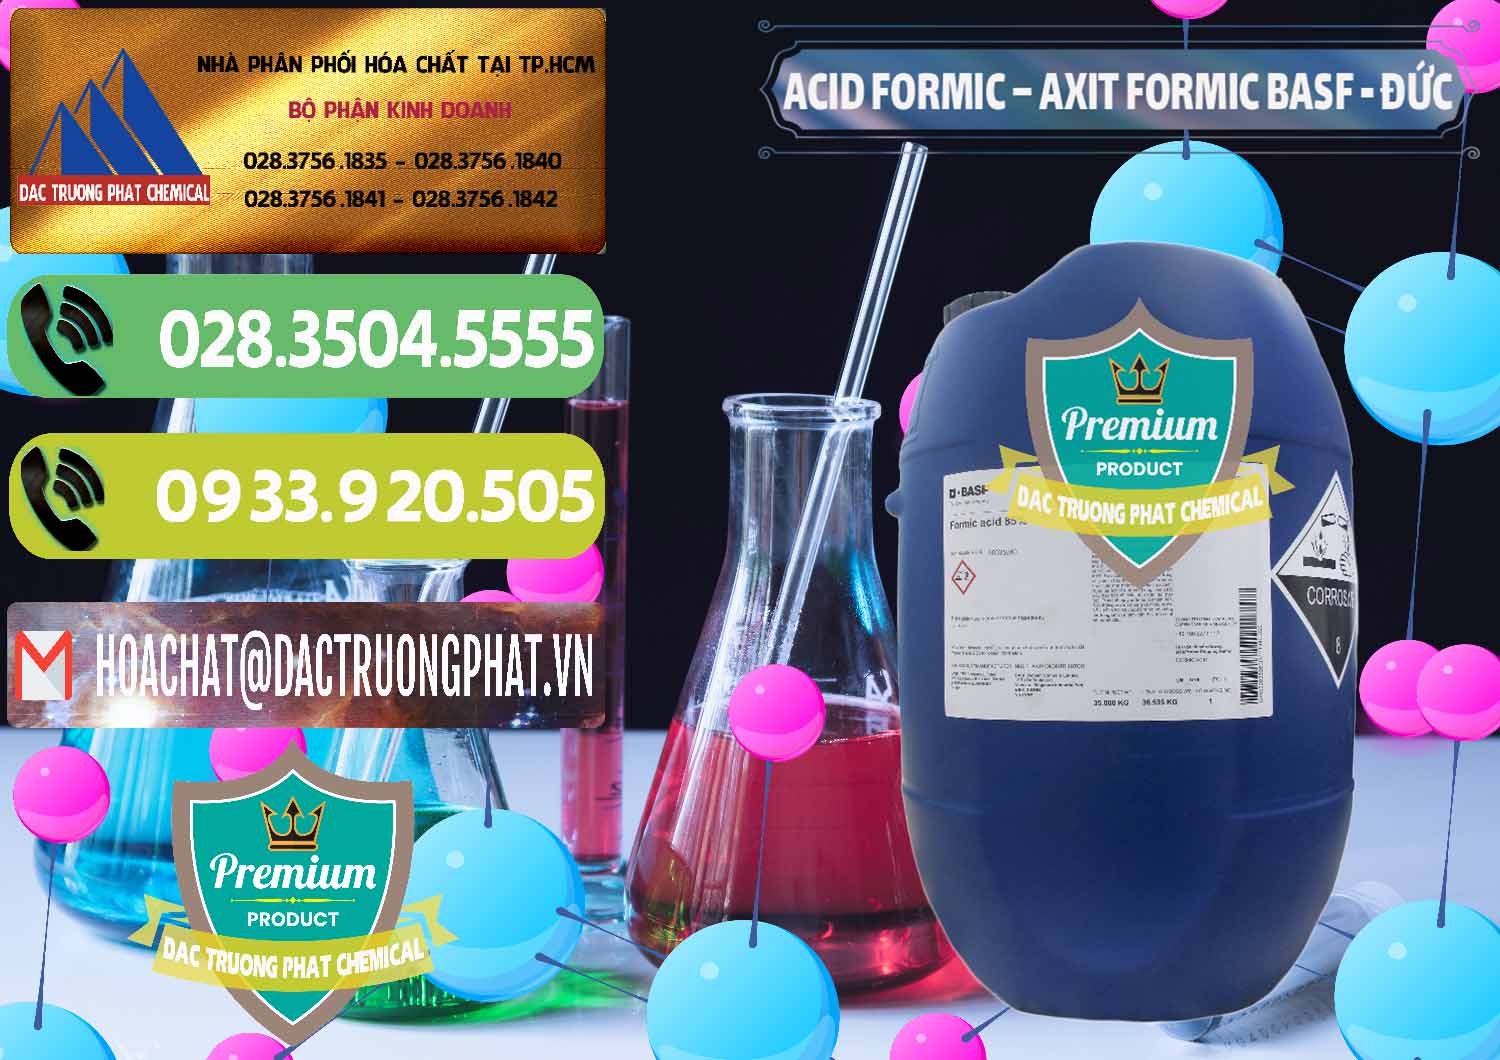 Nơi kinh doanh _ bán Acid Formic - Axit Formic BASF Đức Germany - 0028 - Công ty bán - phân phối hóa chất tại TP.HCM - hoachatmientay.vn